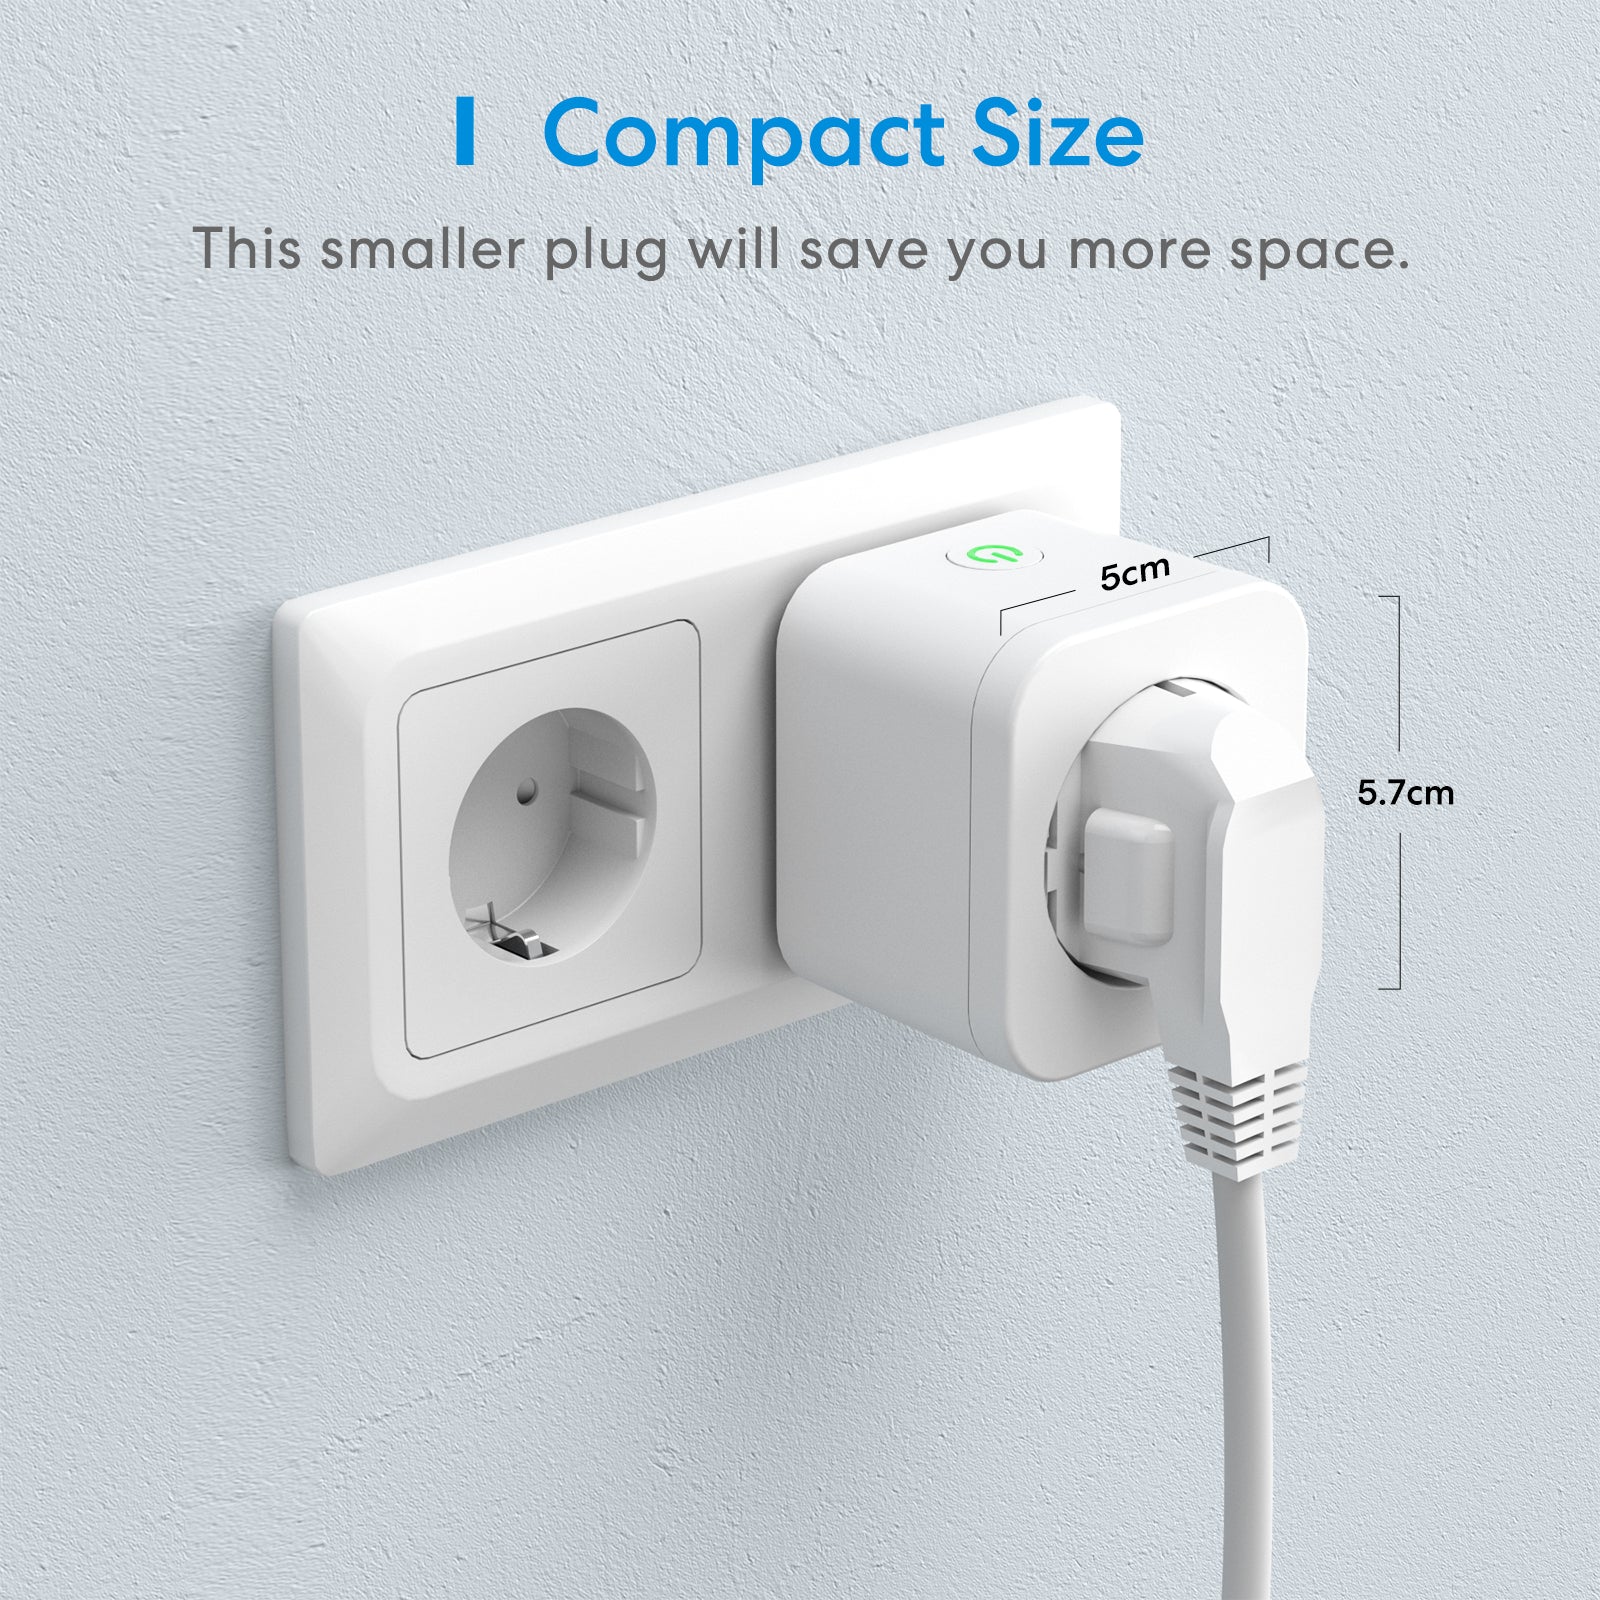 Enceinte connectée  Echo Pop (2023) - Compacte,Alexa + Prise Connectée  Meross Smart plug ou Ampoule connectée Sengled –